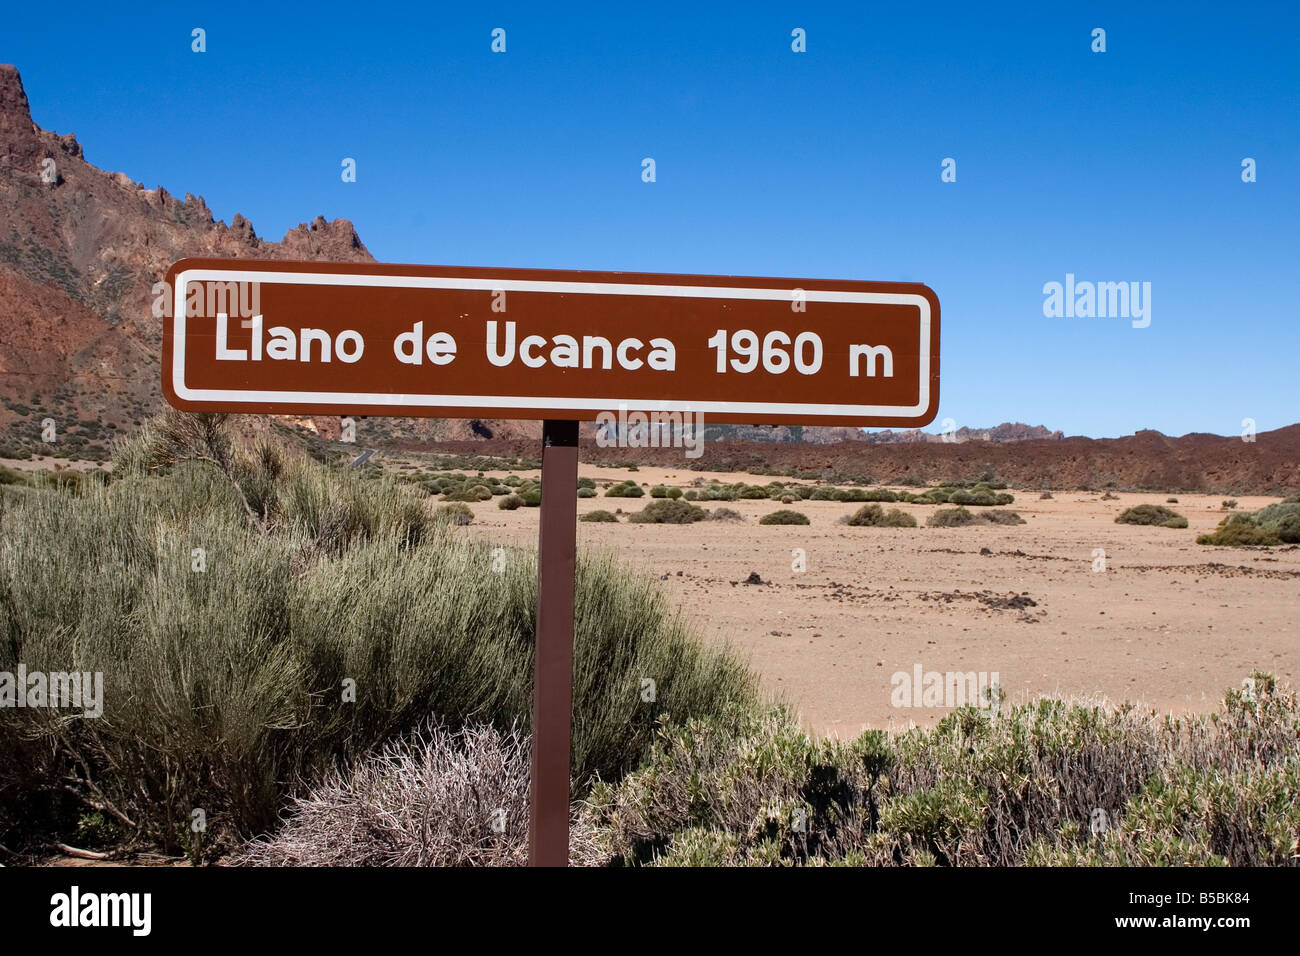 Llano de Ucanca, Parque Nacional de Las Canadas del Teide (Teide National Park), Tenerife, Canary Islands, Spain, Europe Stock Photo